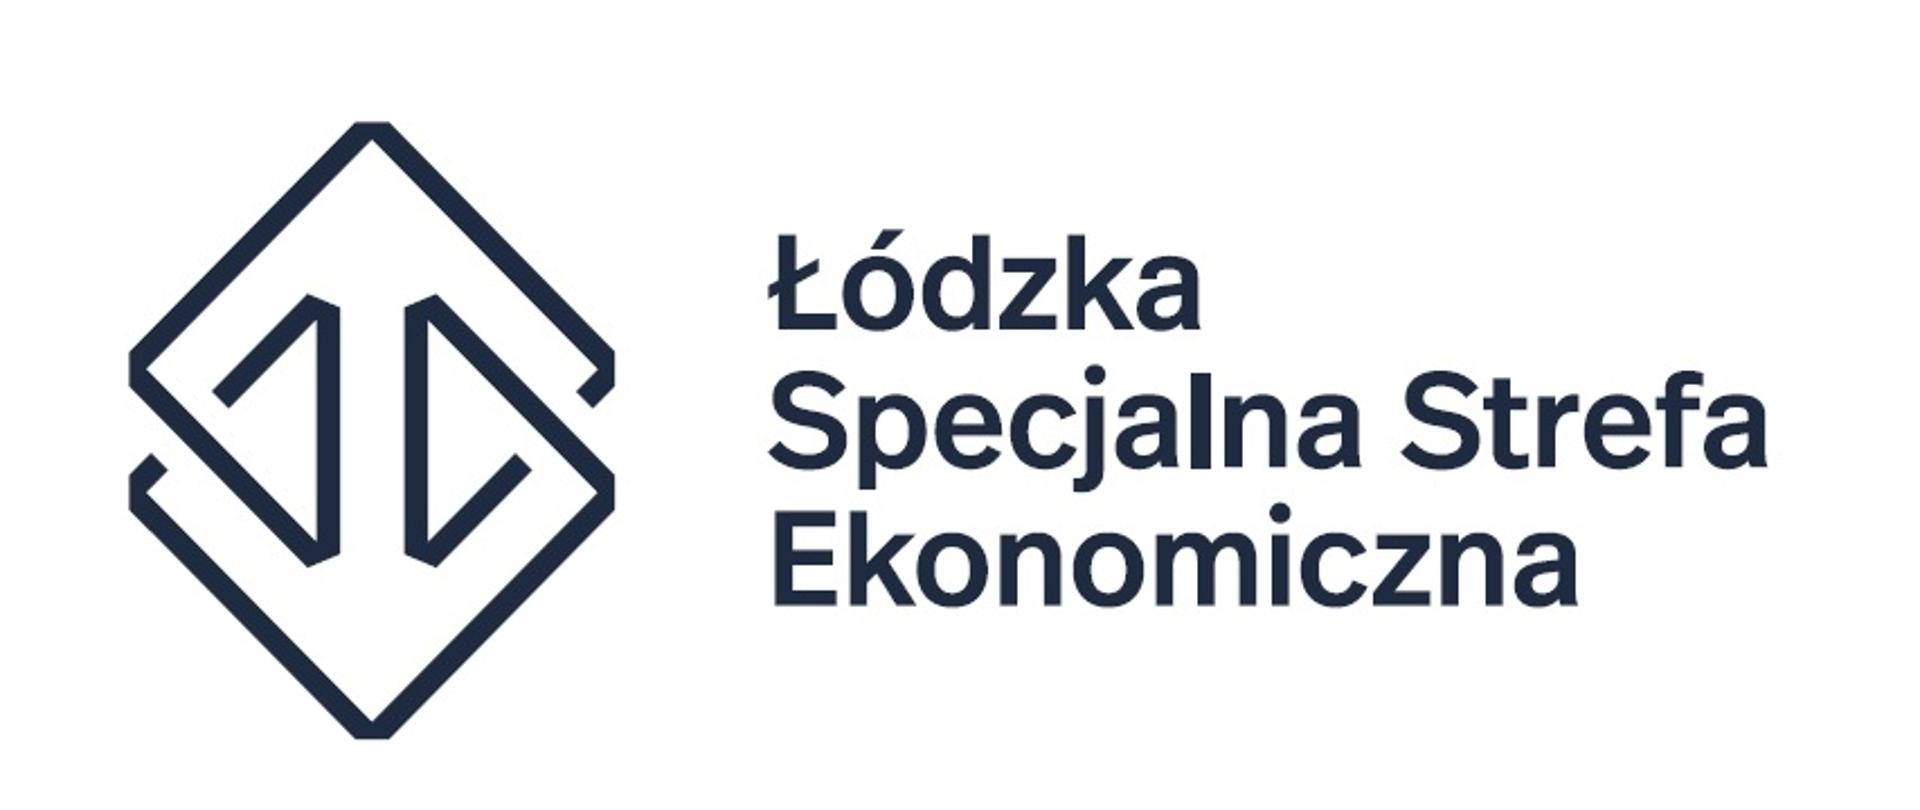 Logo Łódzkiej Specjalnej Strefy Ekonomicznej, dwa złączone kwadraty i napis na białym tle.